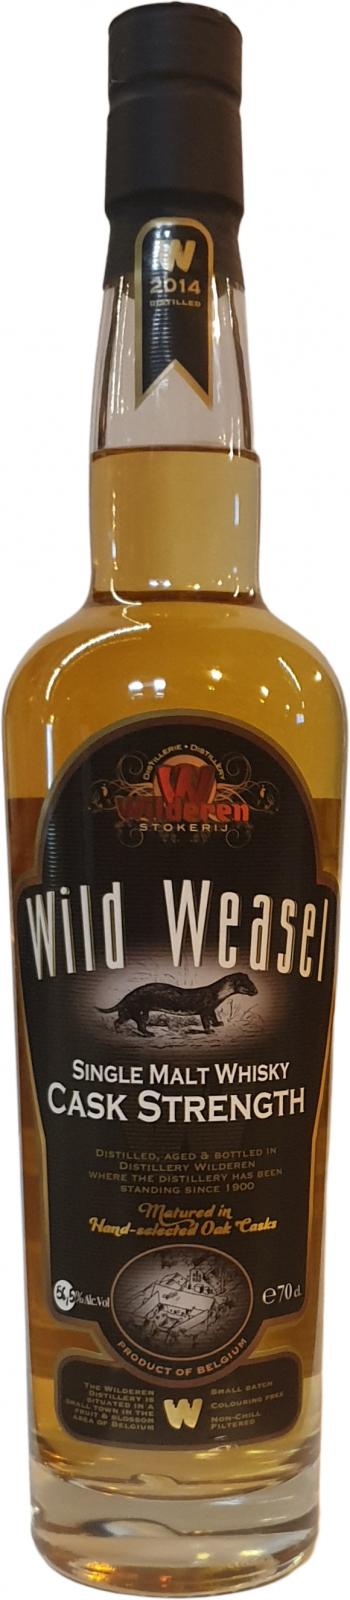 Wild Weasel 2014 oak #38 56.5% 700ml